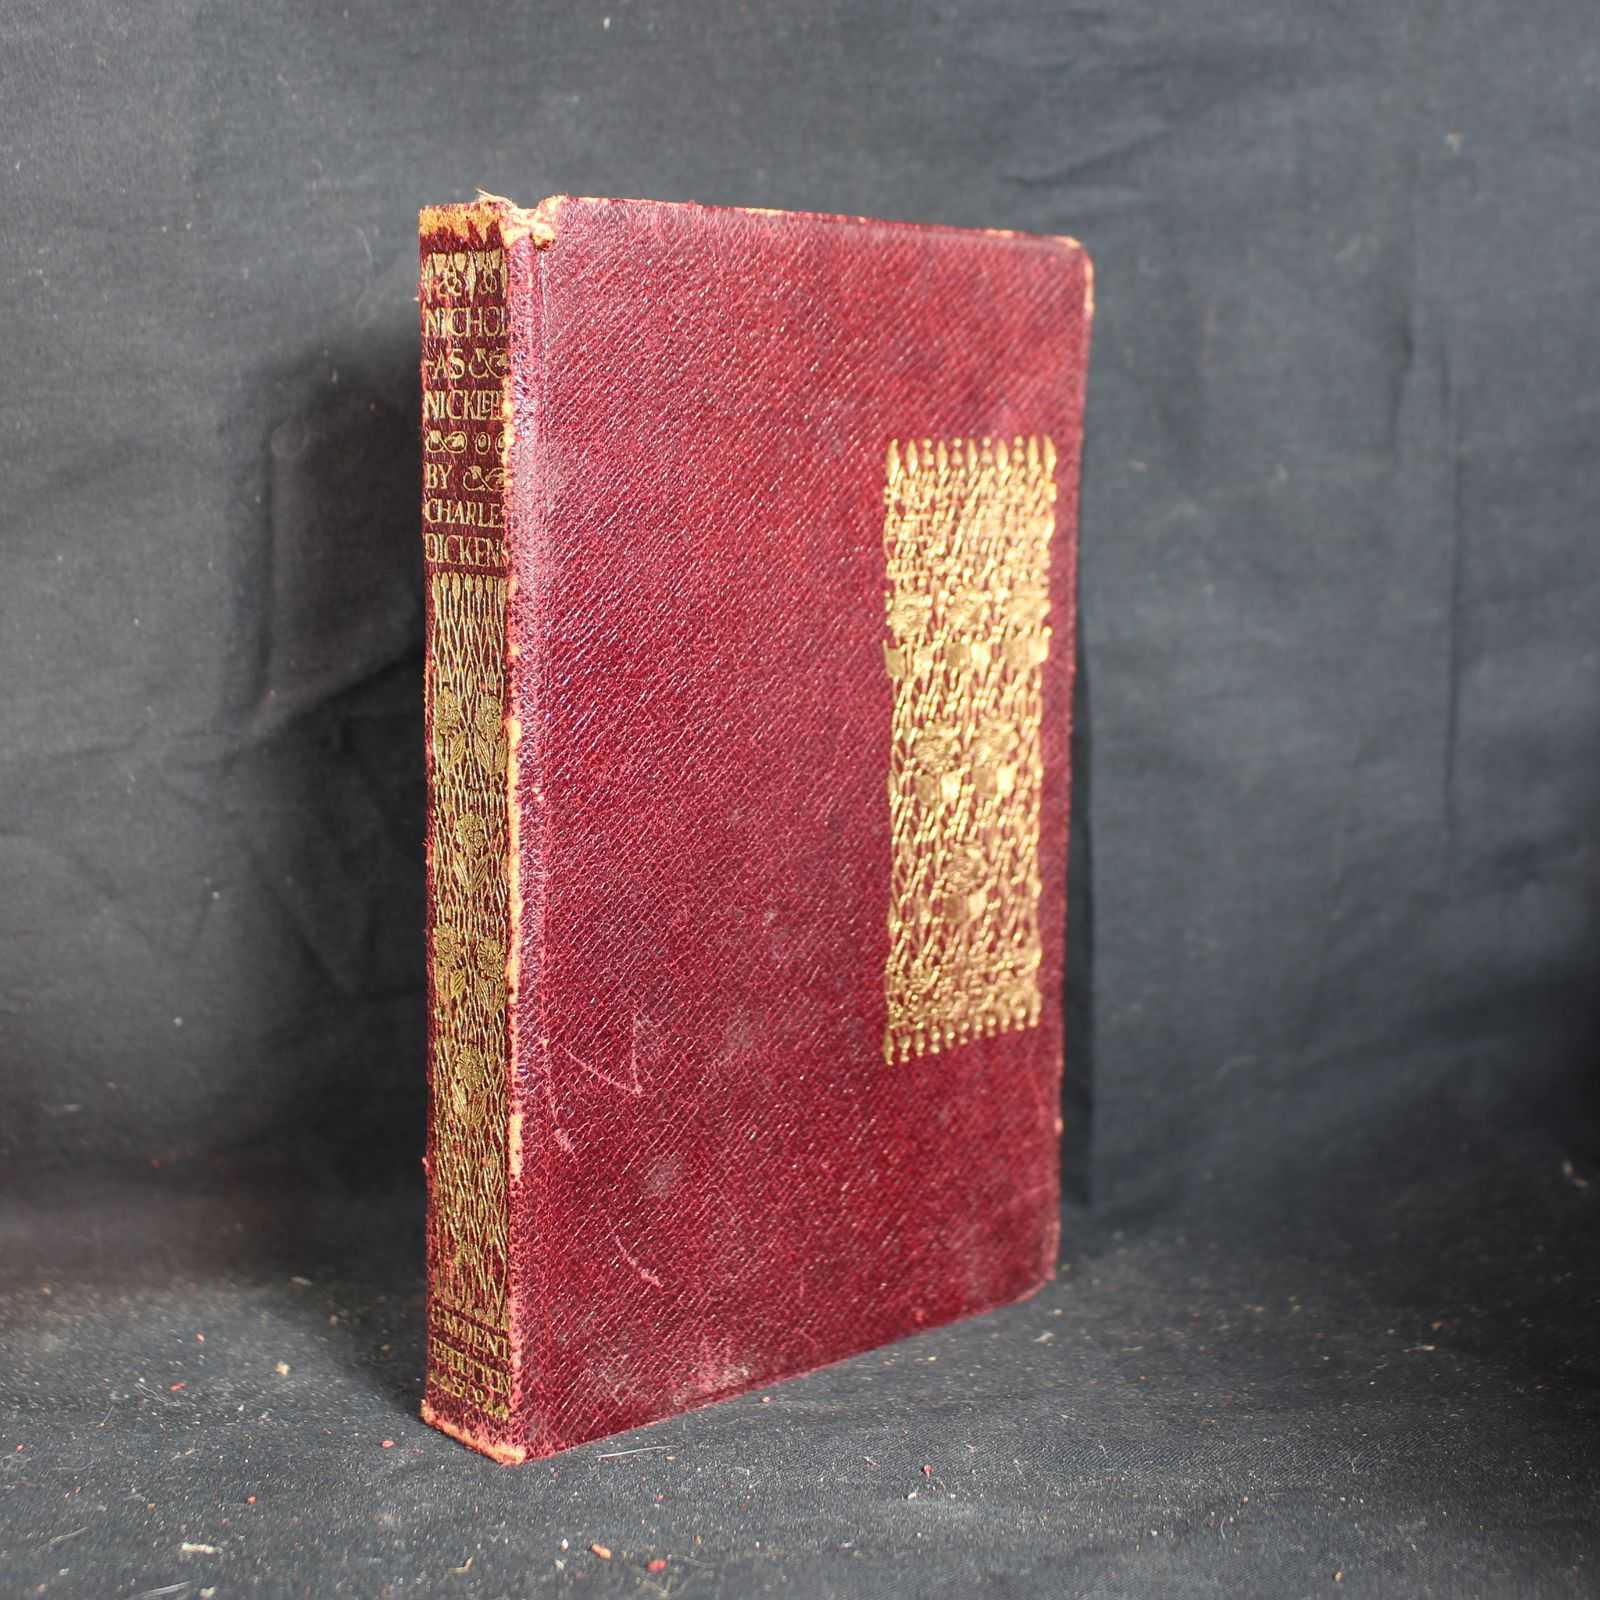 Vintage Hardcover Nicholas Nickleby by Charles Dickens, 1912